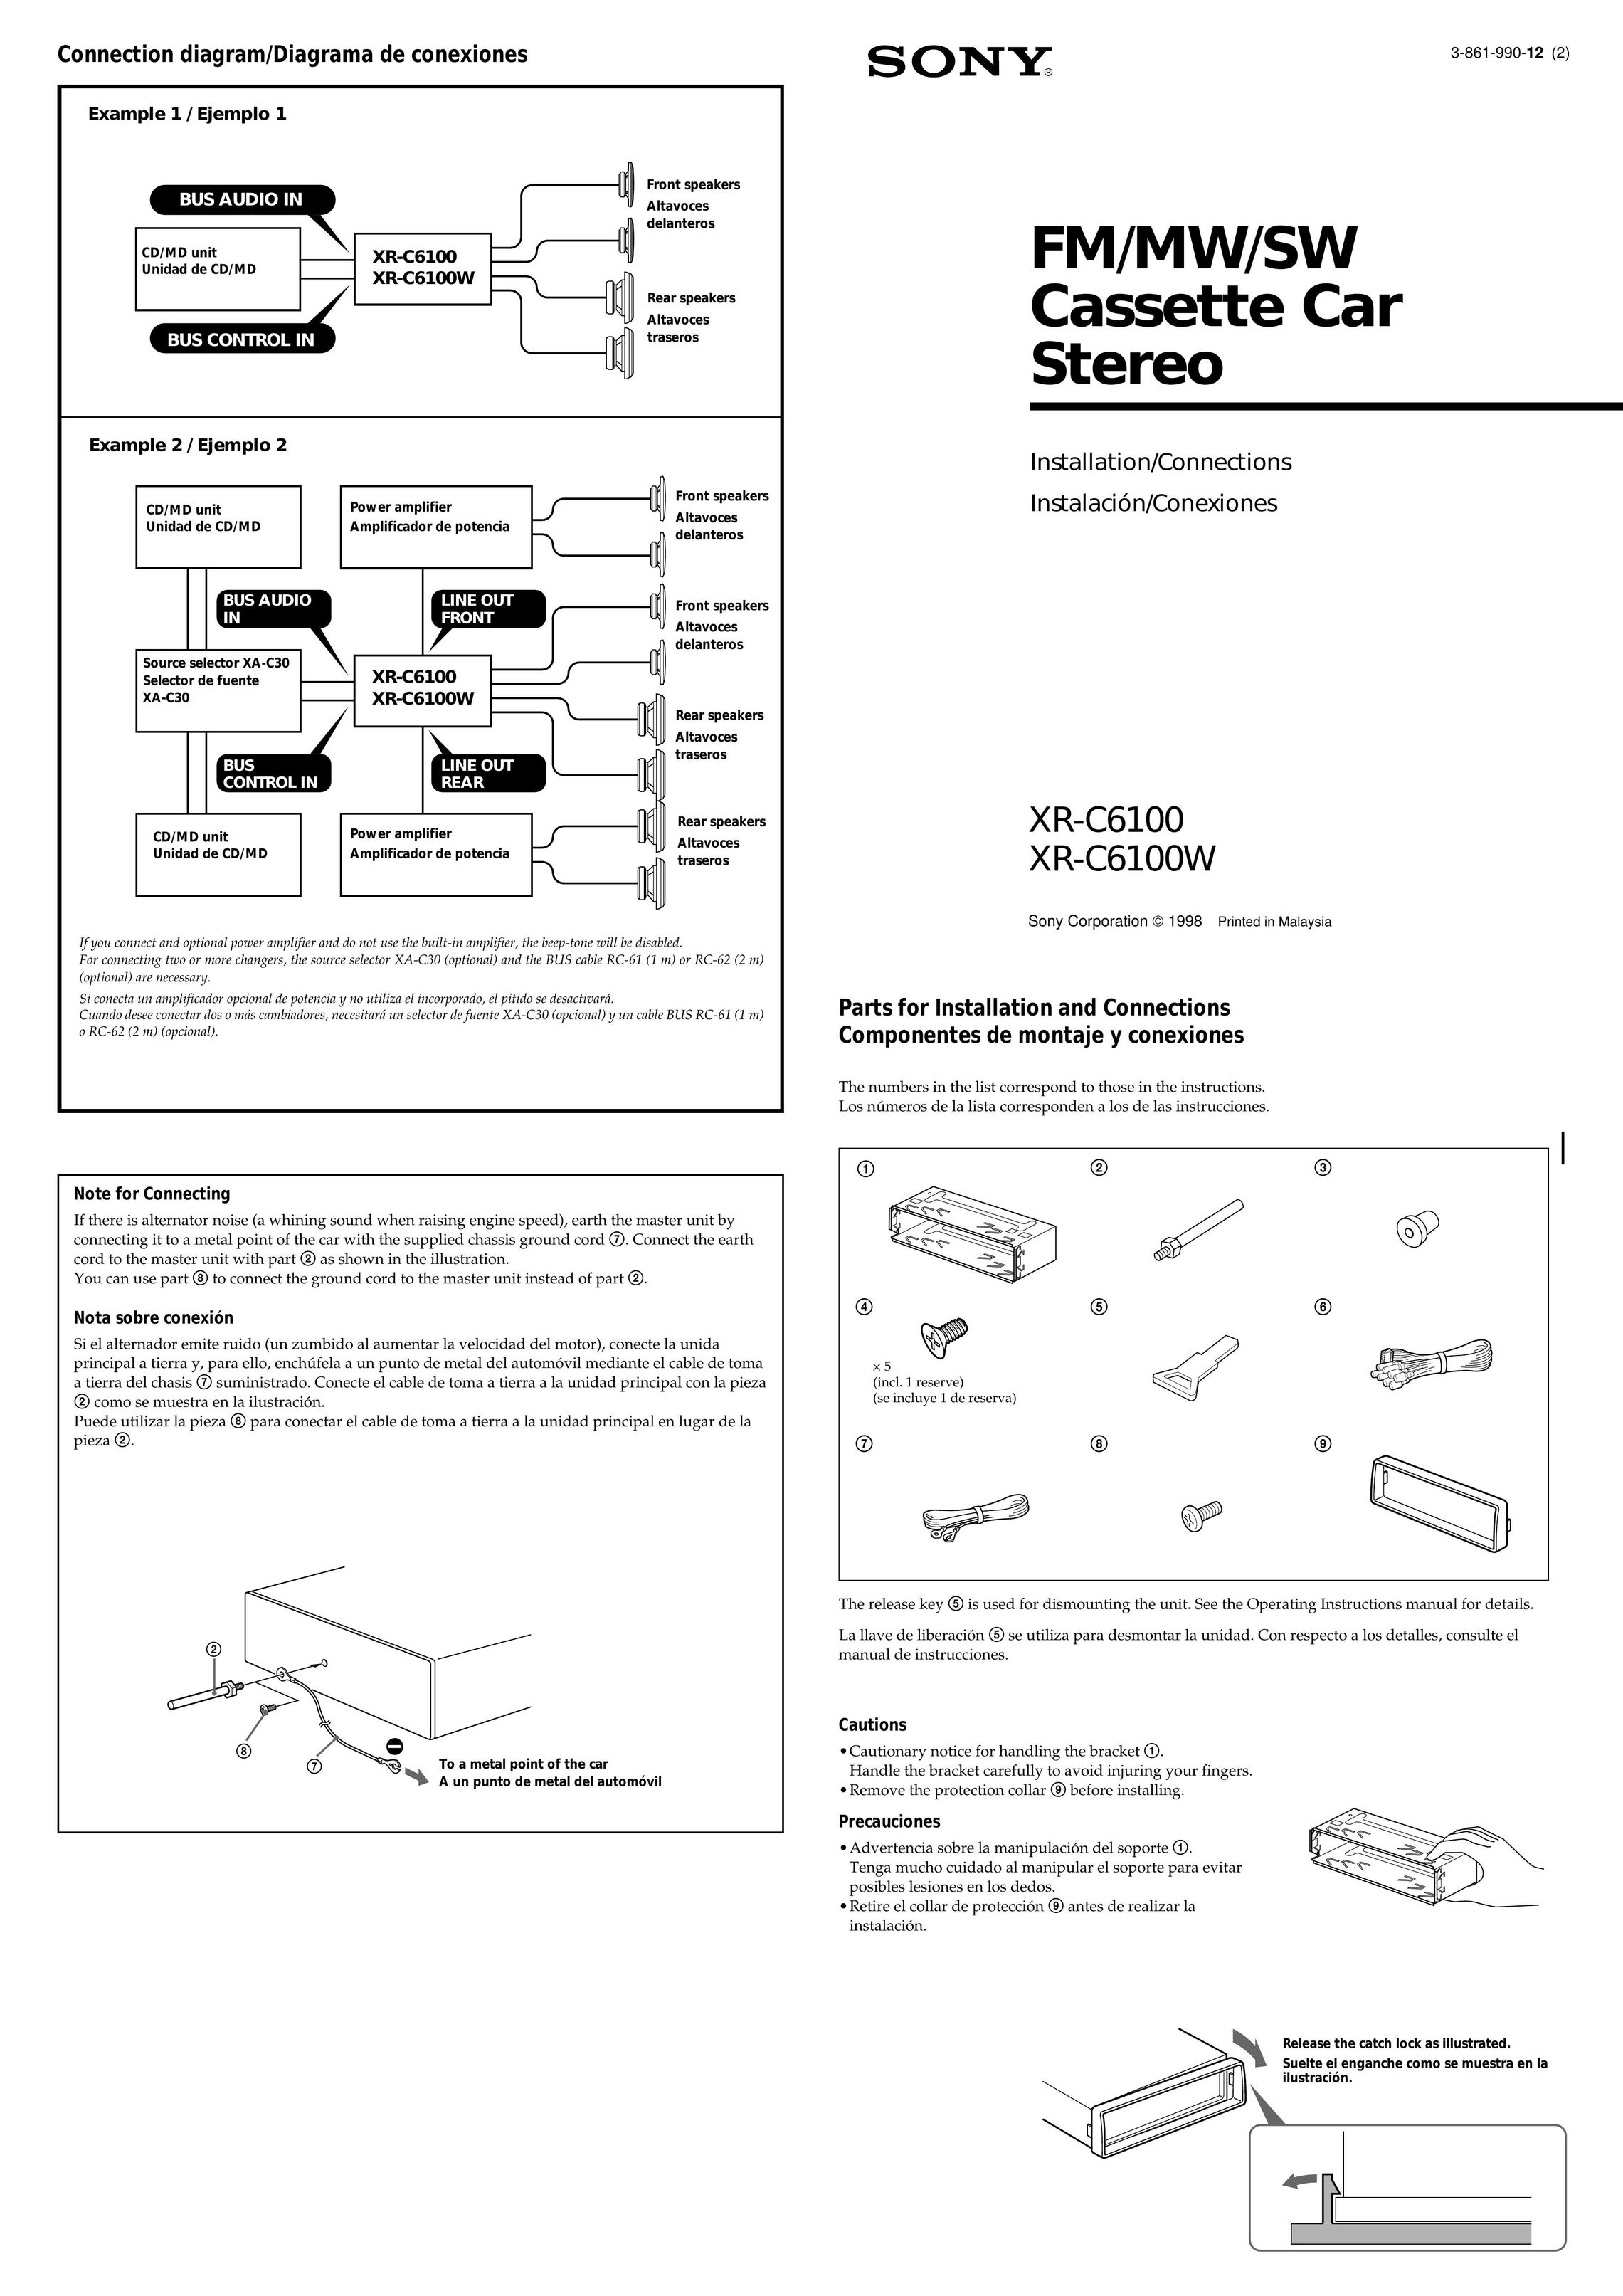 Sony XR-C6100W Car Video System User Manual